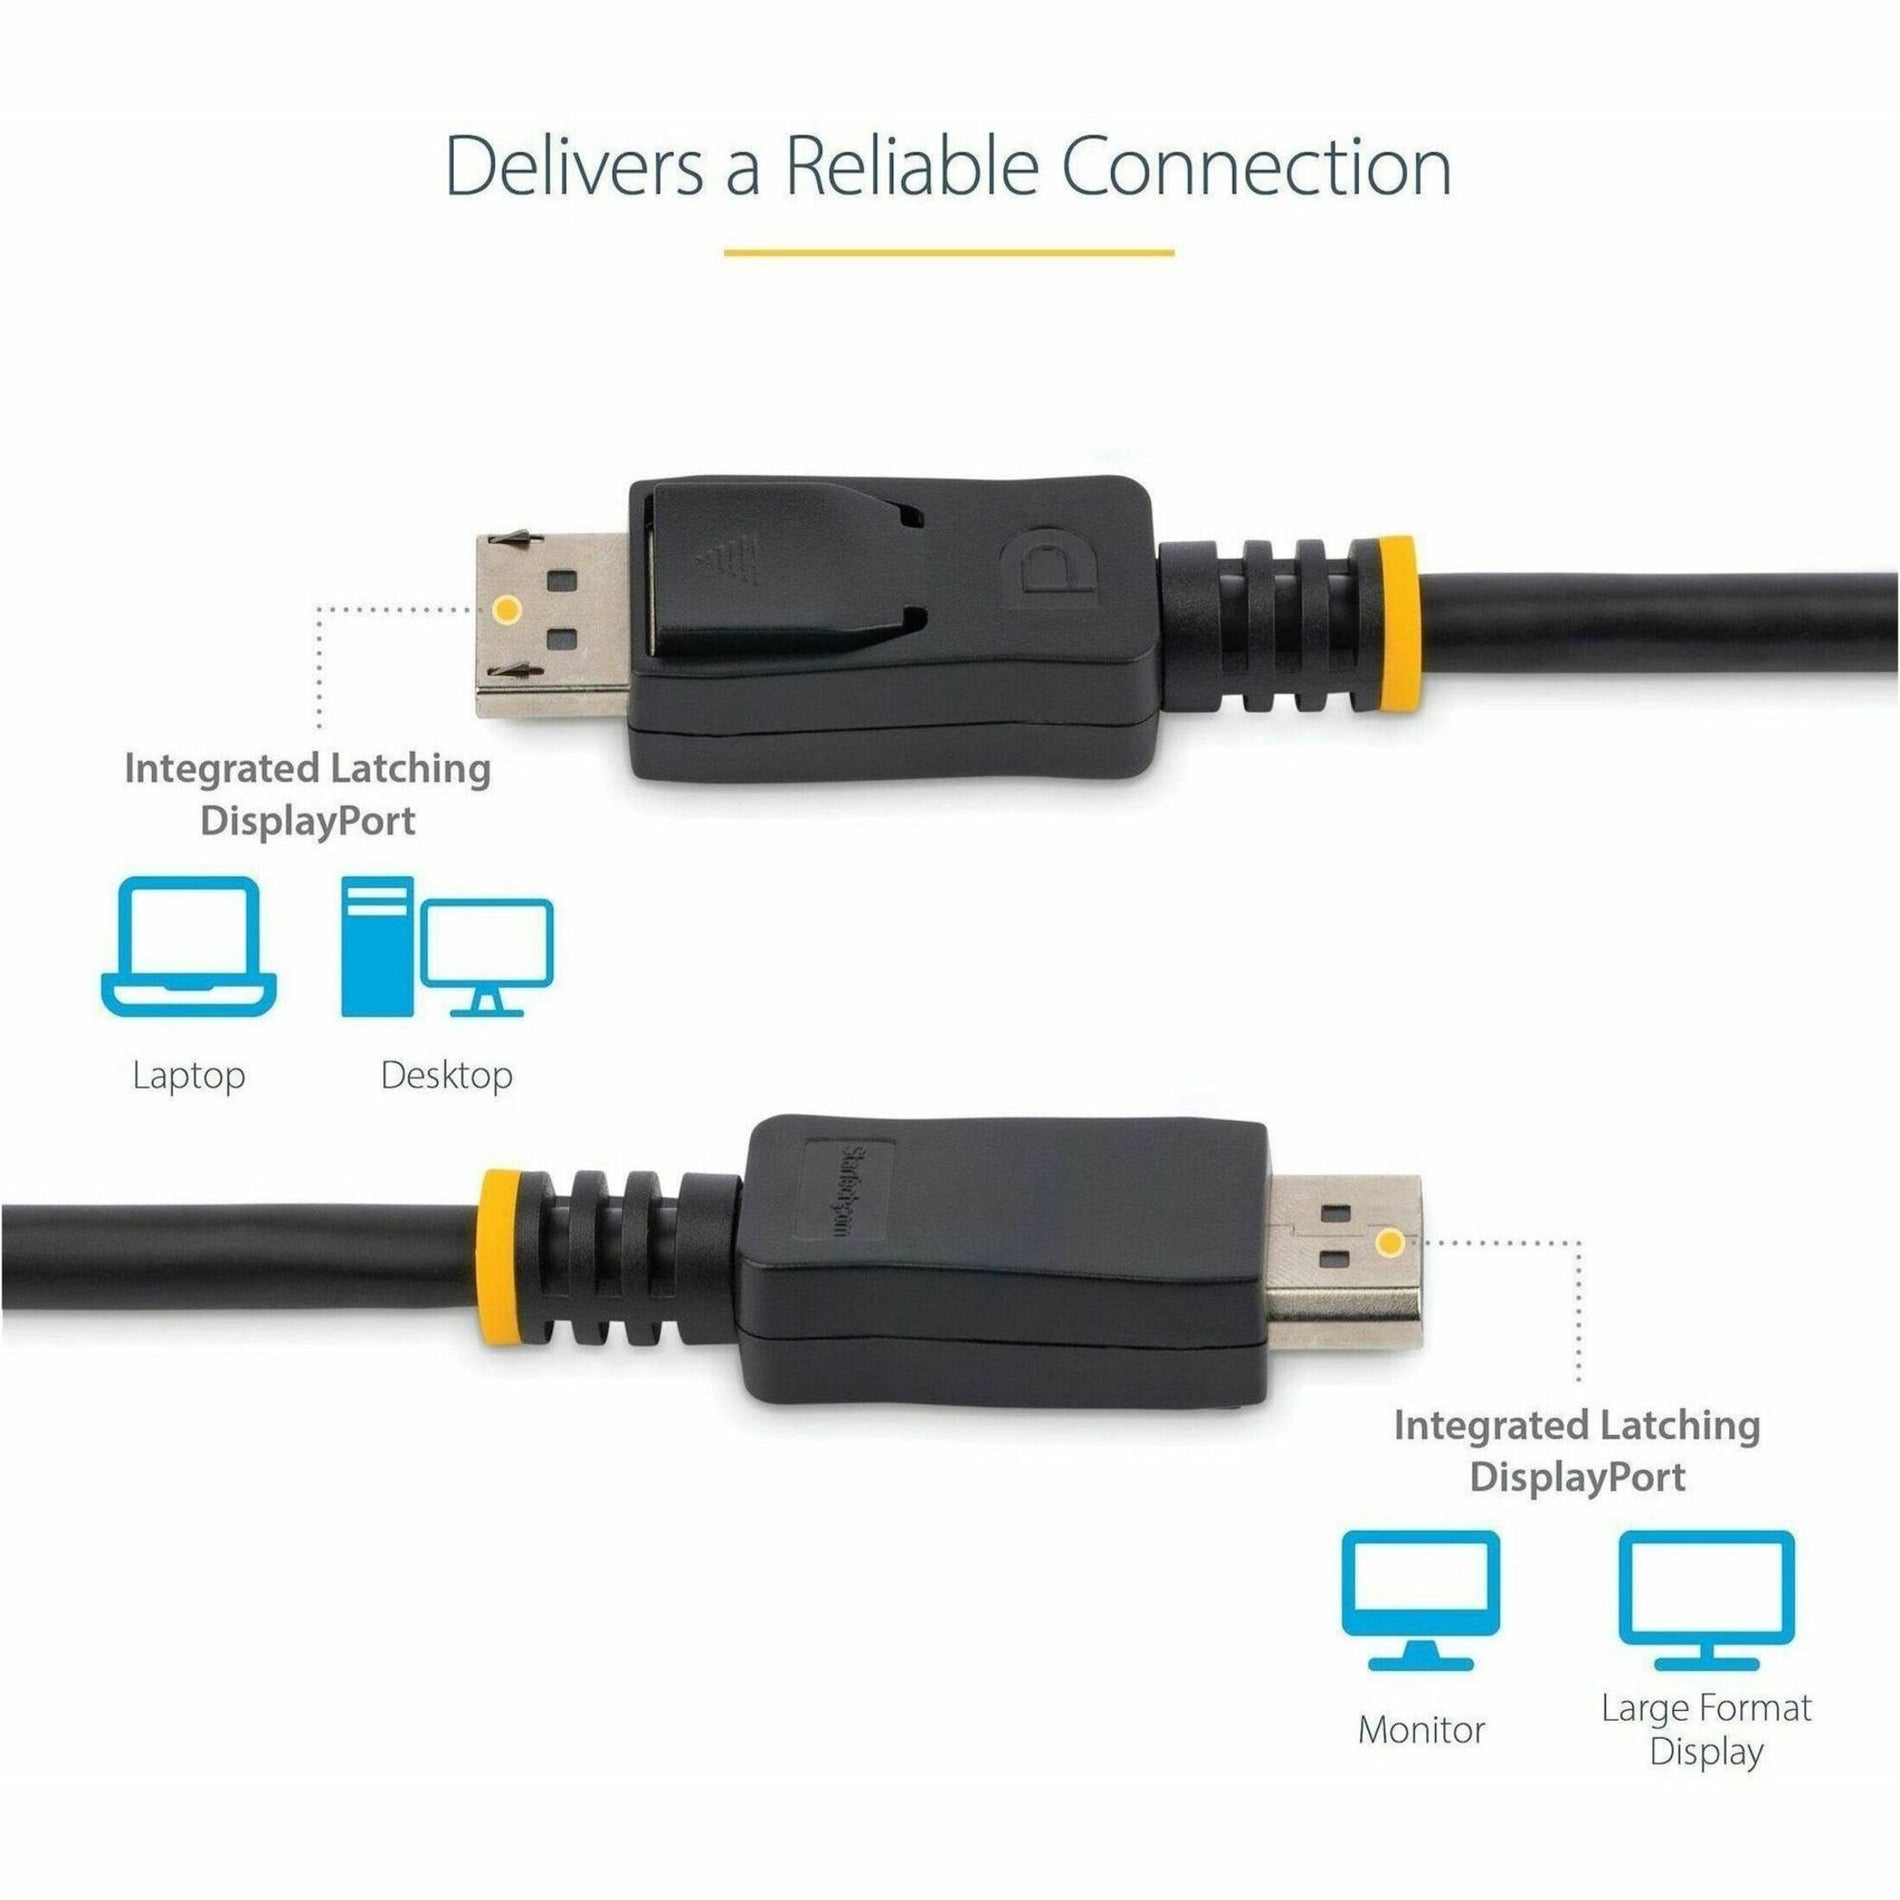 كابل فيديو 4k StarTech.com DISPLPORT1L بطول 1 قدم مع قفل DisplayPort 1.2 M/M اسم العلامة التجارية: StarTech.com